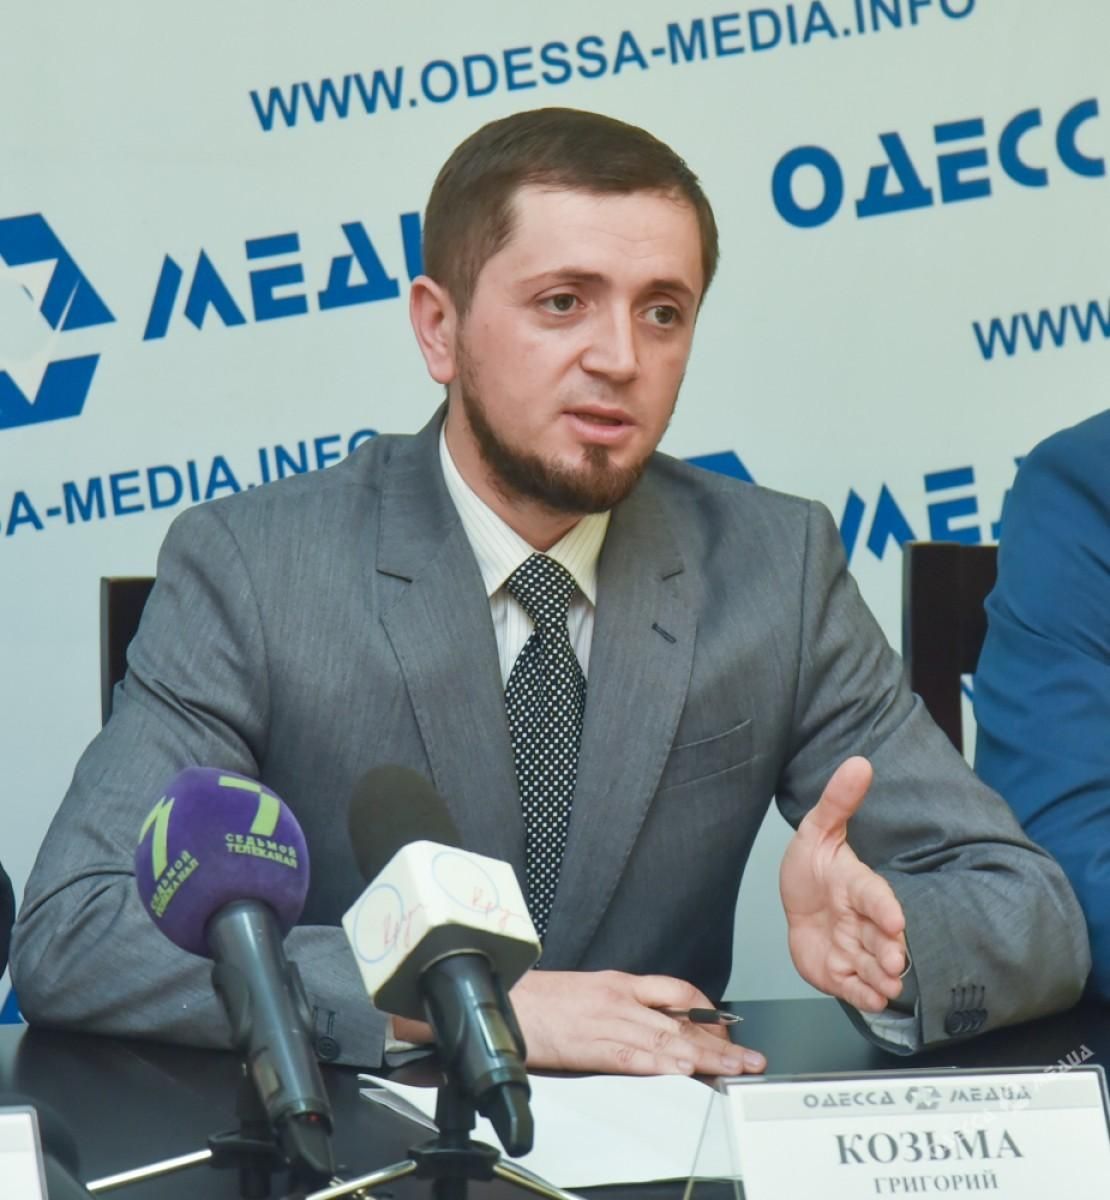 Одесская мэрия может взять на себя функции отдельной "республики", – журналист